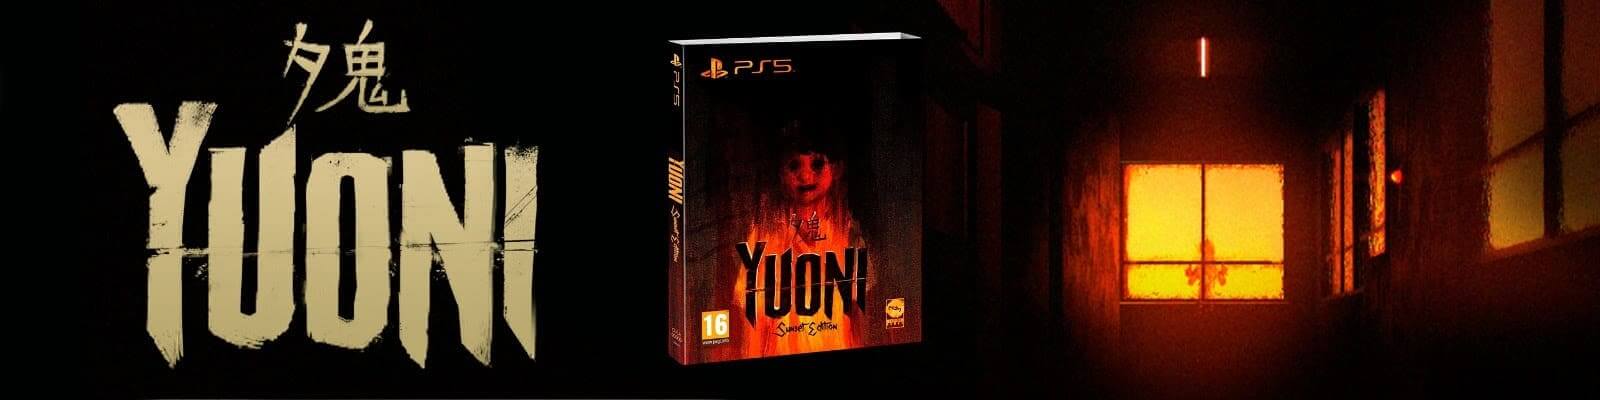 YUONI llegará en formato físico para PlayStation 5